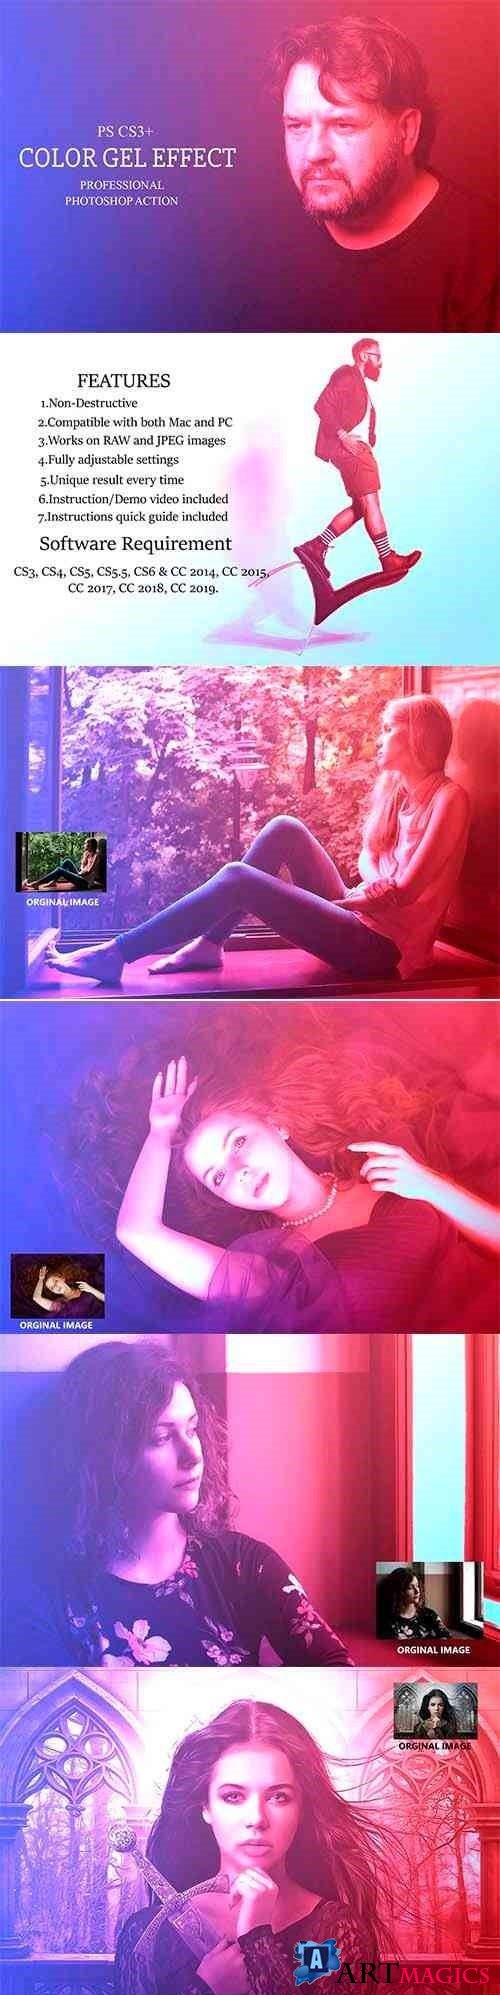 Color Gel Effect - Photoshop Action - 4145587